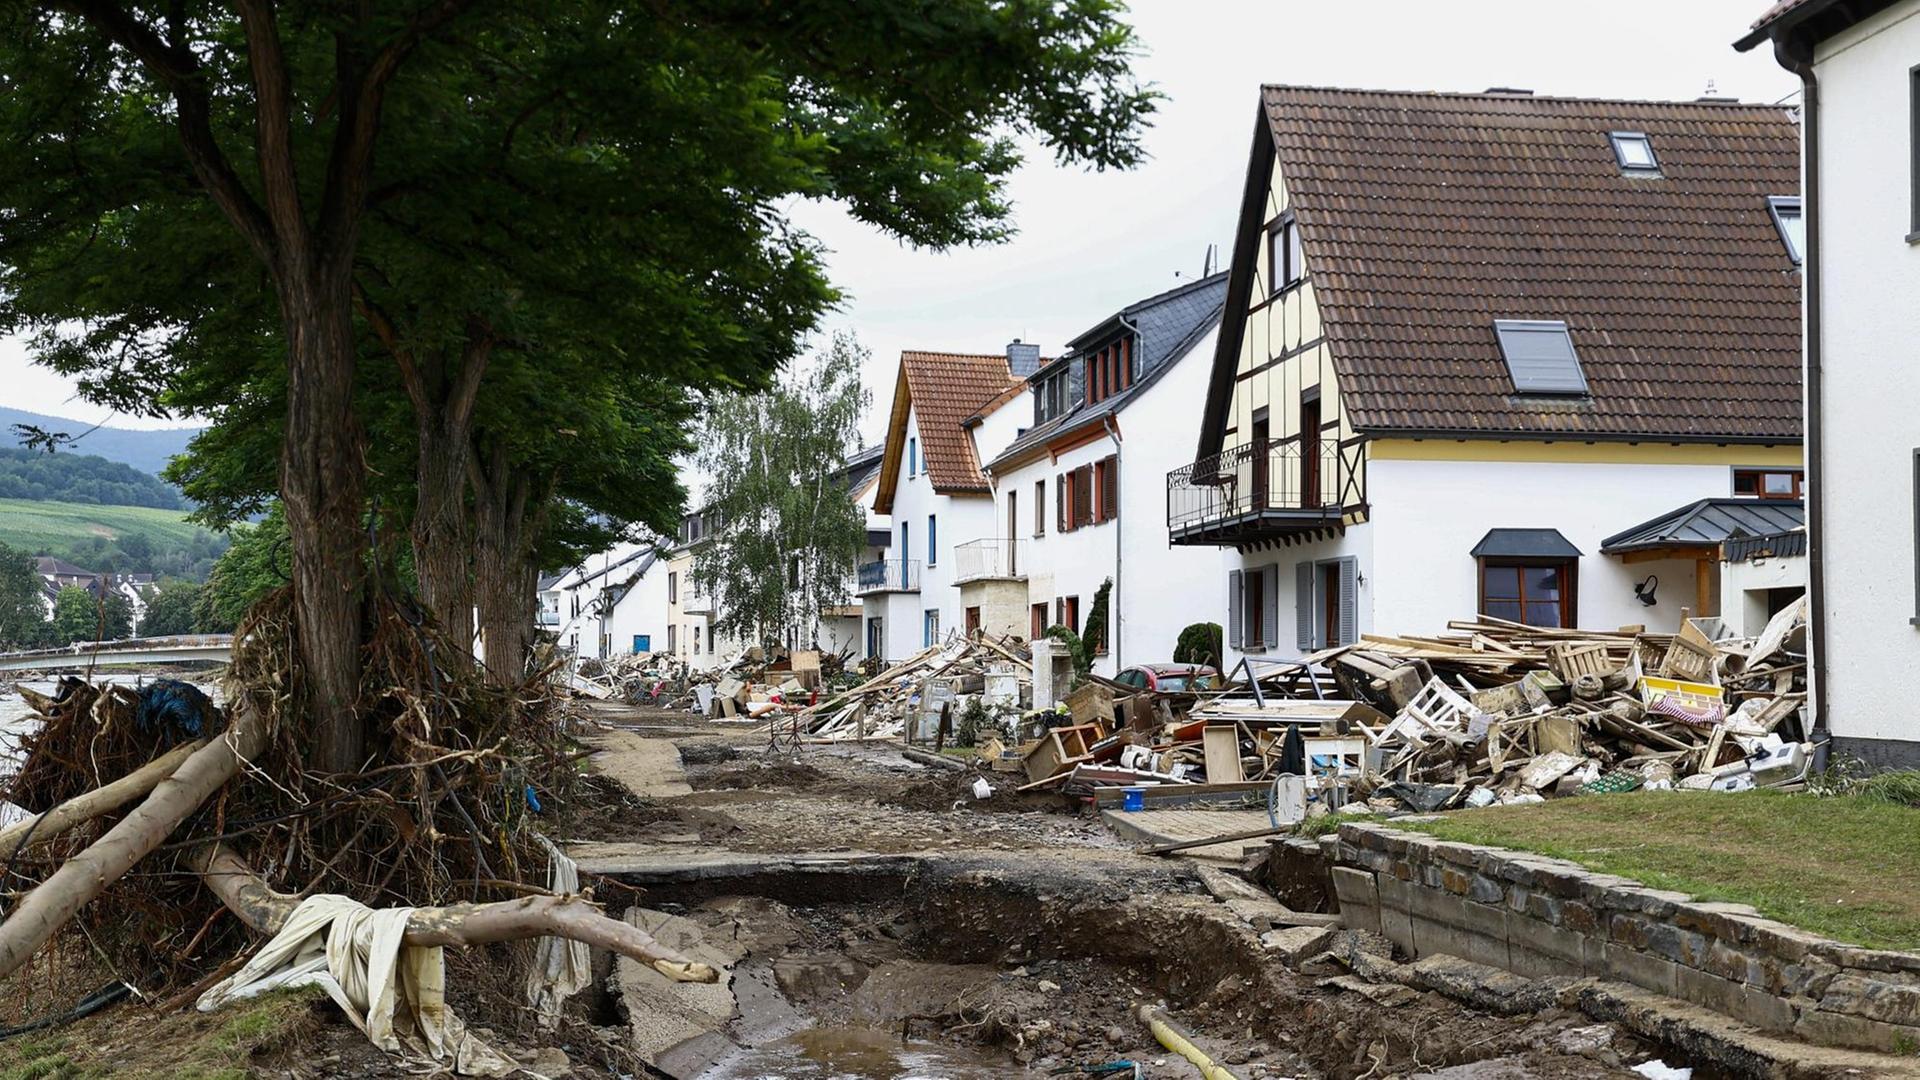 Ein Blick auf das zerstörte Ahrweiler nach dem Hochwasser in Rheinland-Pfalz.